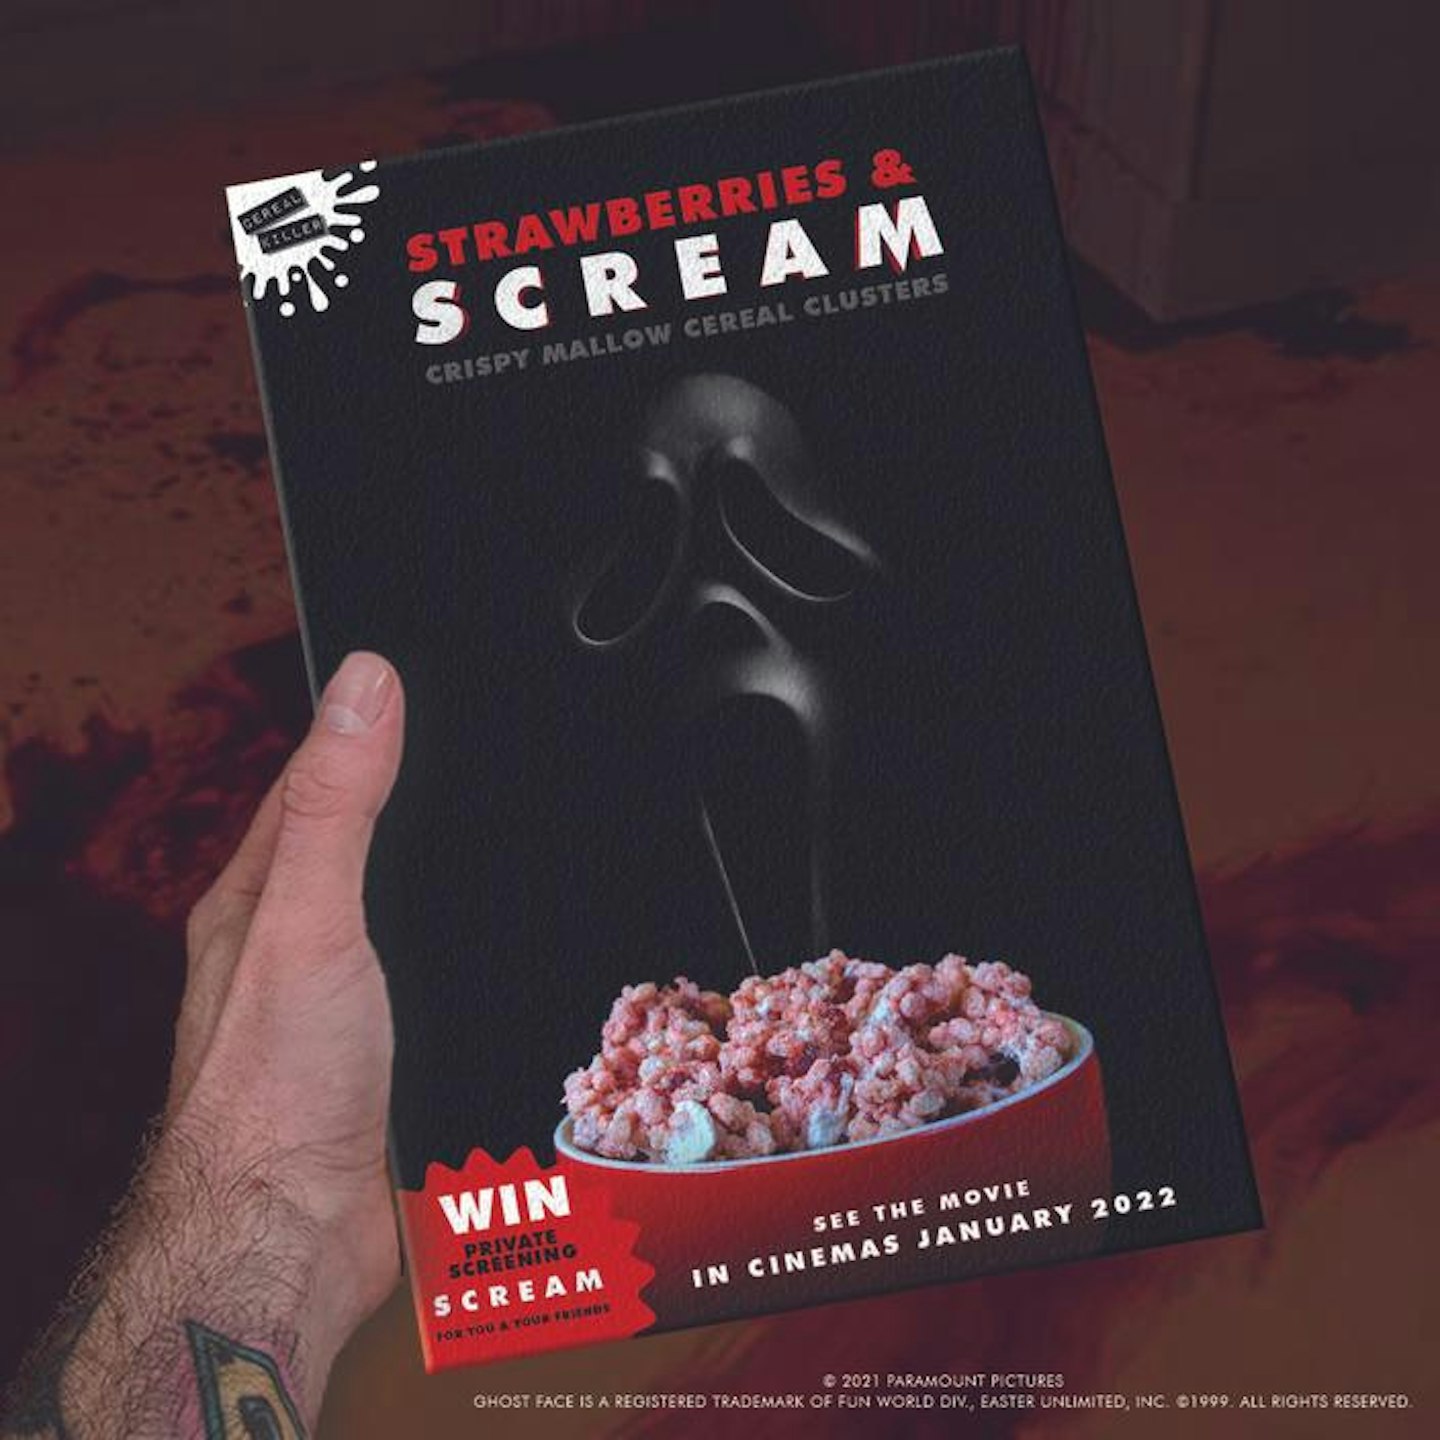 Scream cereal